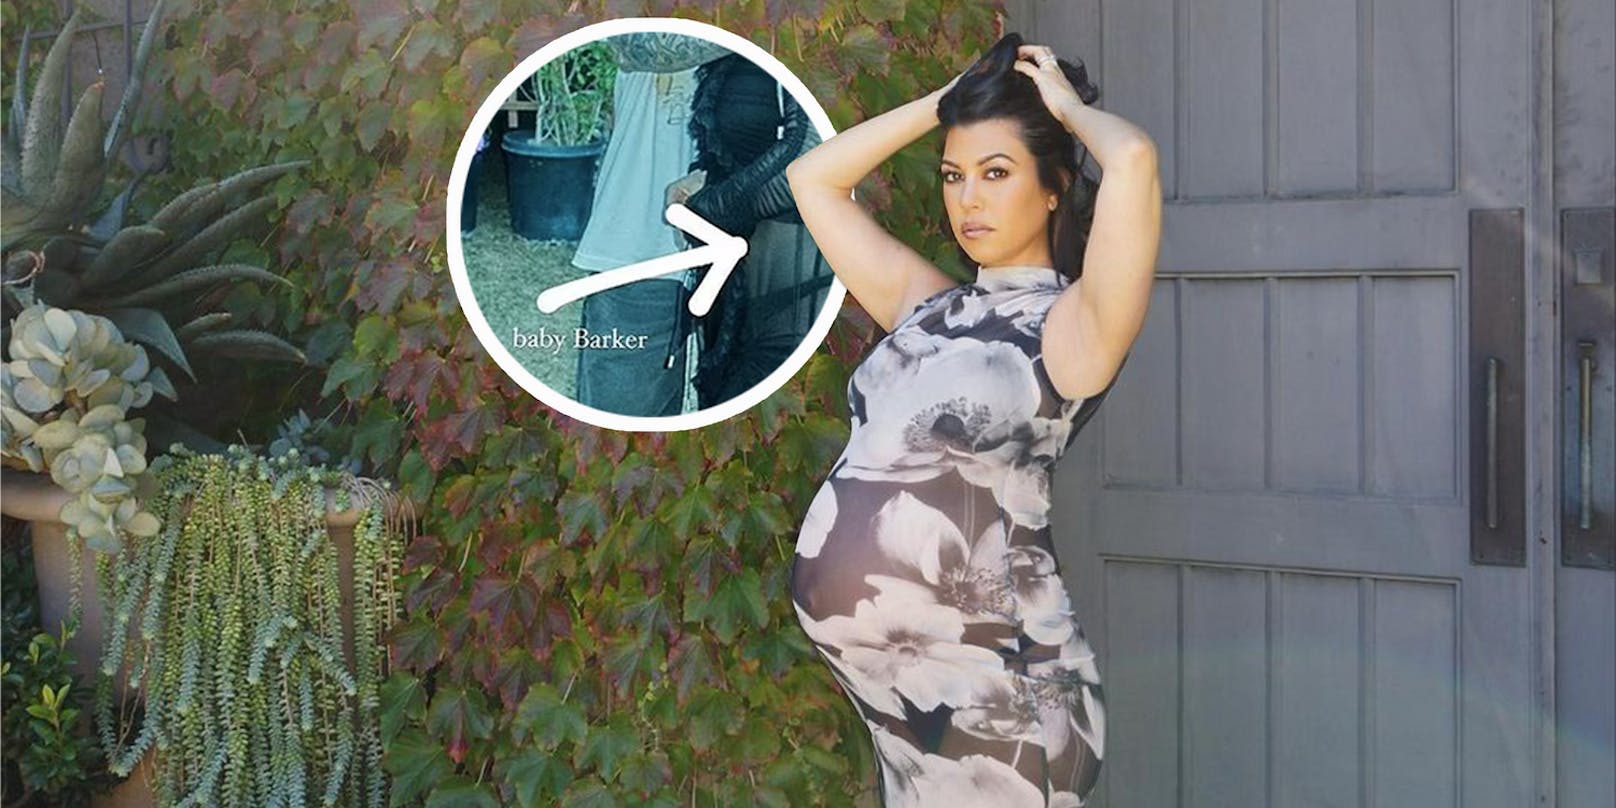 Auf ihrem letzten Instagram Bild sah Kourtney Kardashian schon hochschwanger aus.